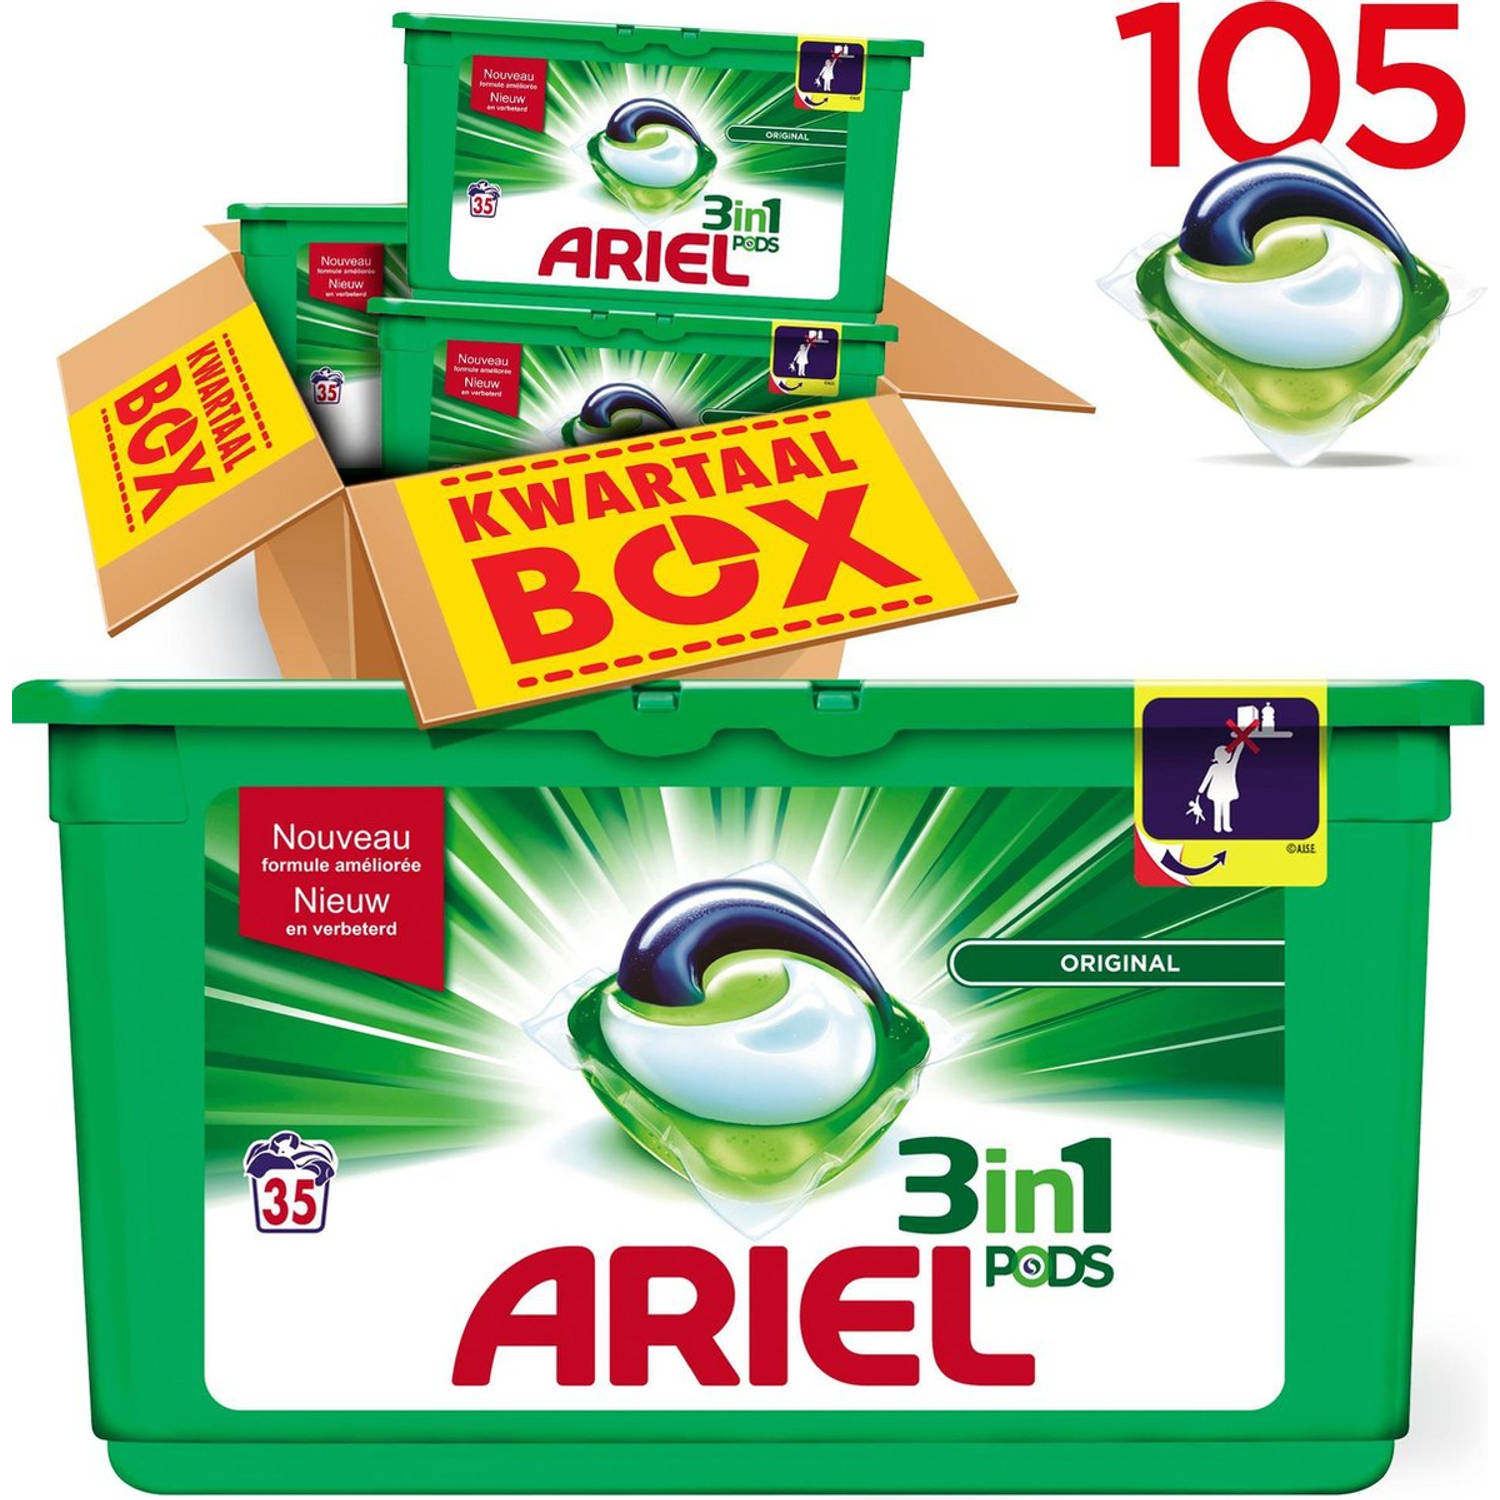 Ariel 3in1 Pods Original - Kwartaalbox 105 Wasbeurten - Wasmiddel Capsules